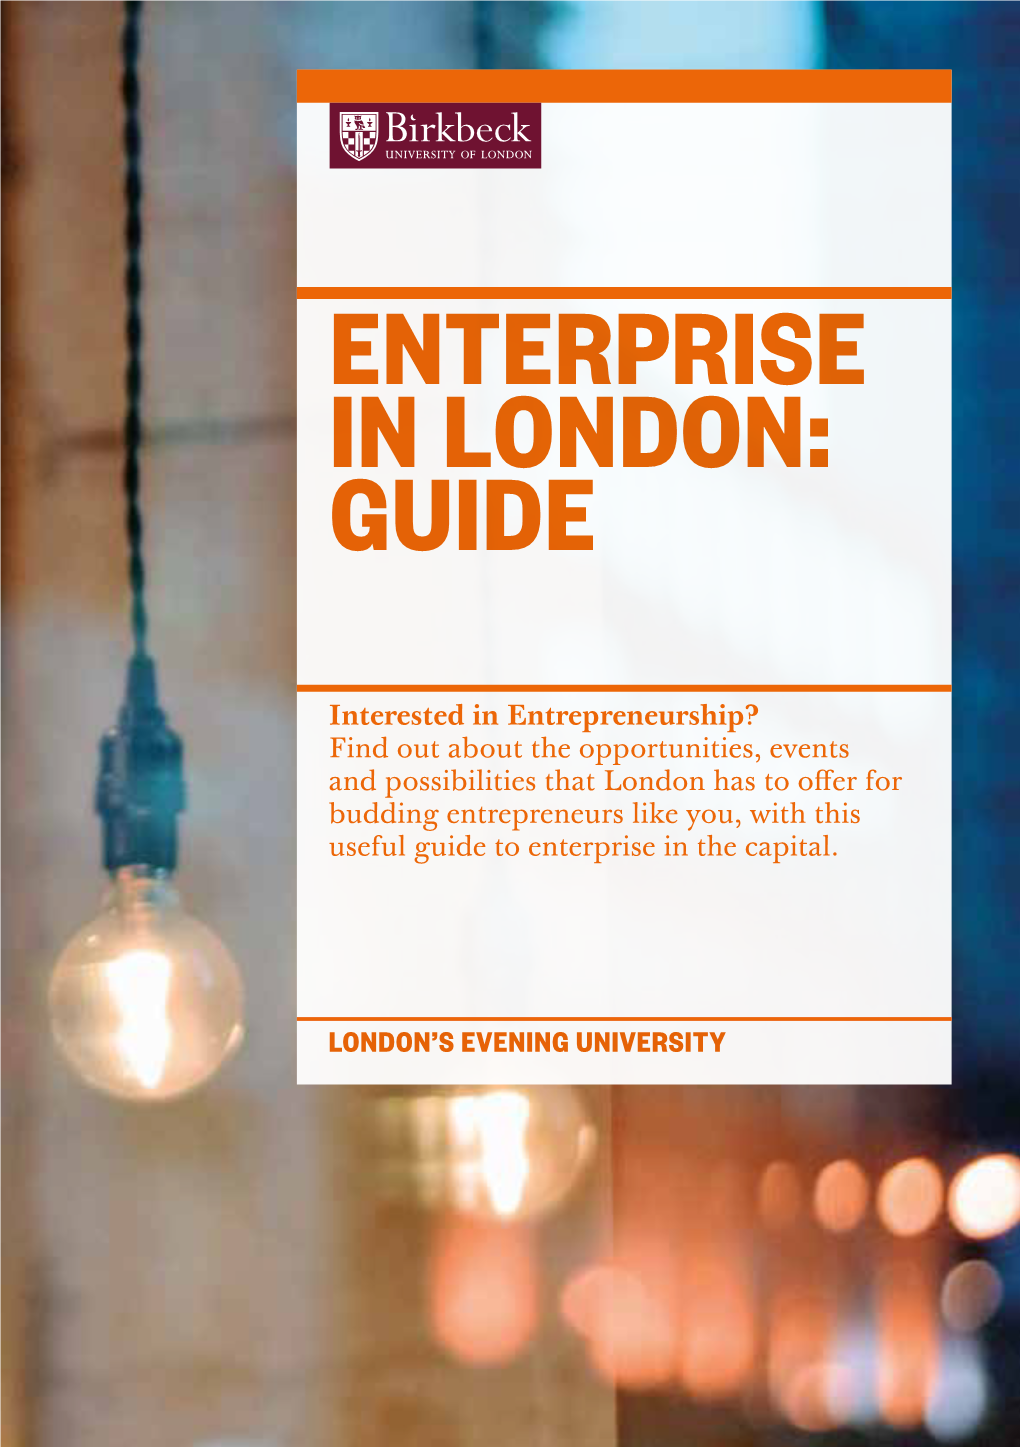 Enterprise in London: Guide